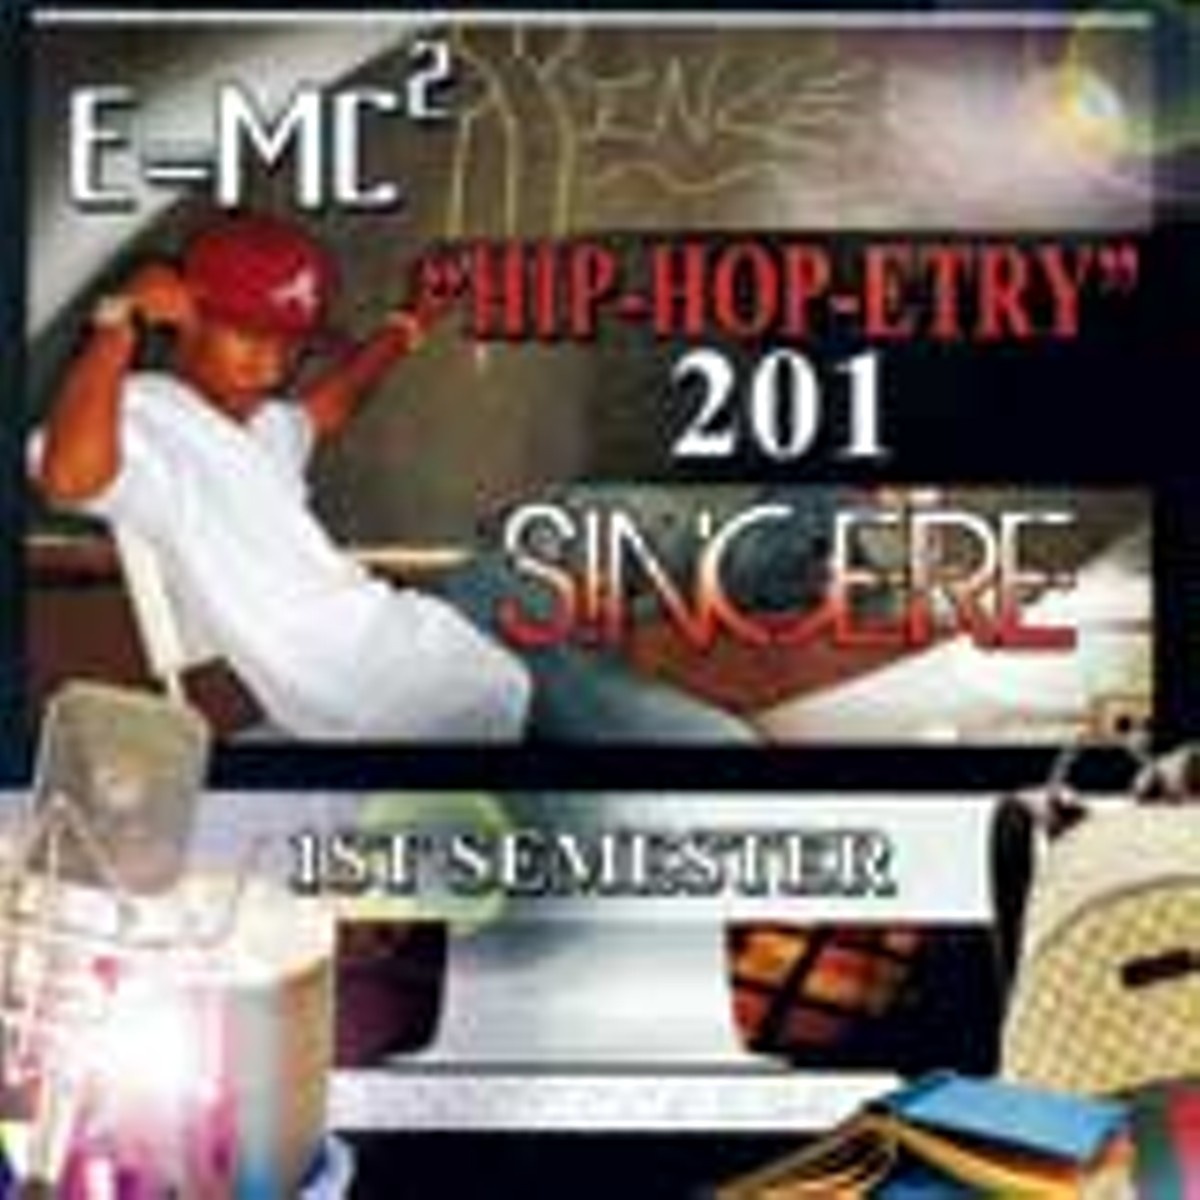 Hip-Hop-Etry 201